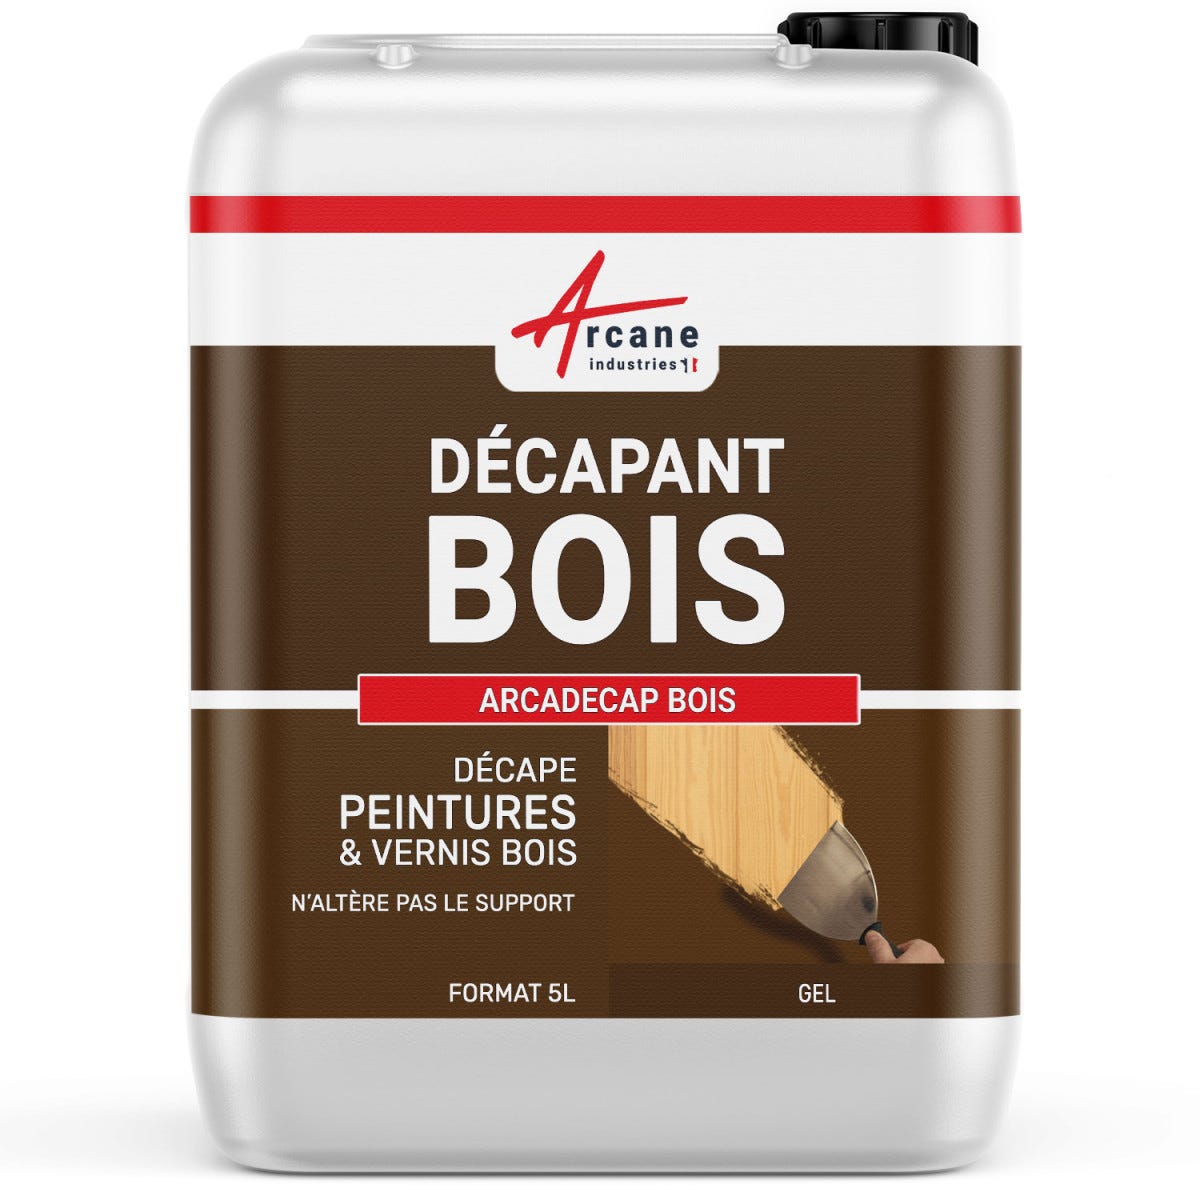 Décapant pour Bois - Produit décapant peinture, vernis - ARCADECAP BOIS - 5 L - - ARCANE INDUSTRIES 0